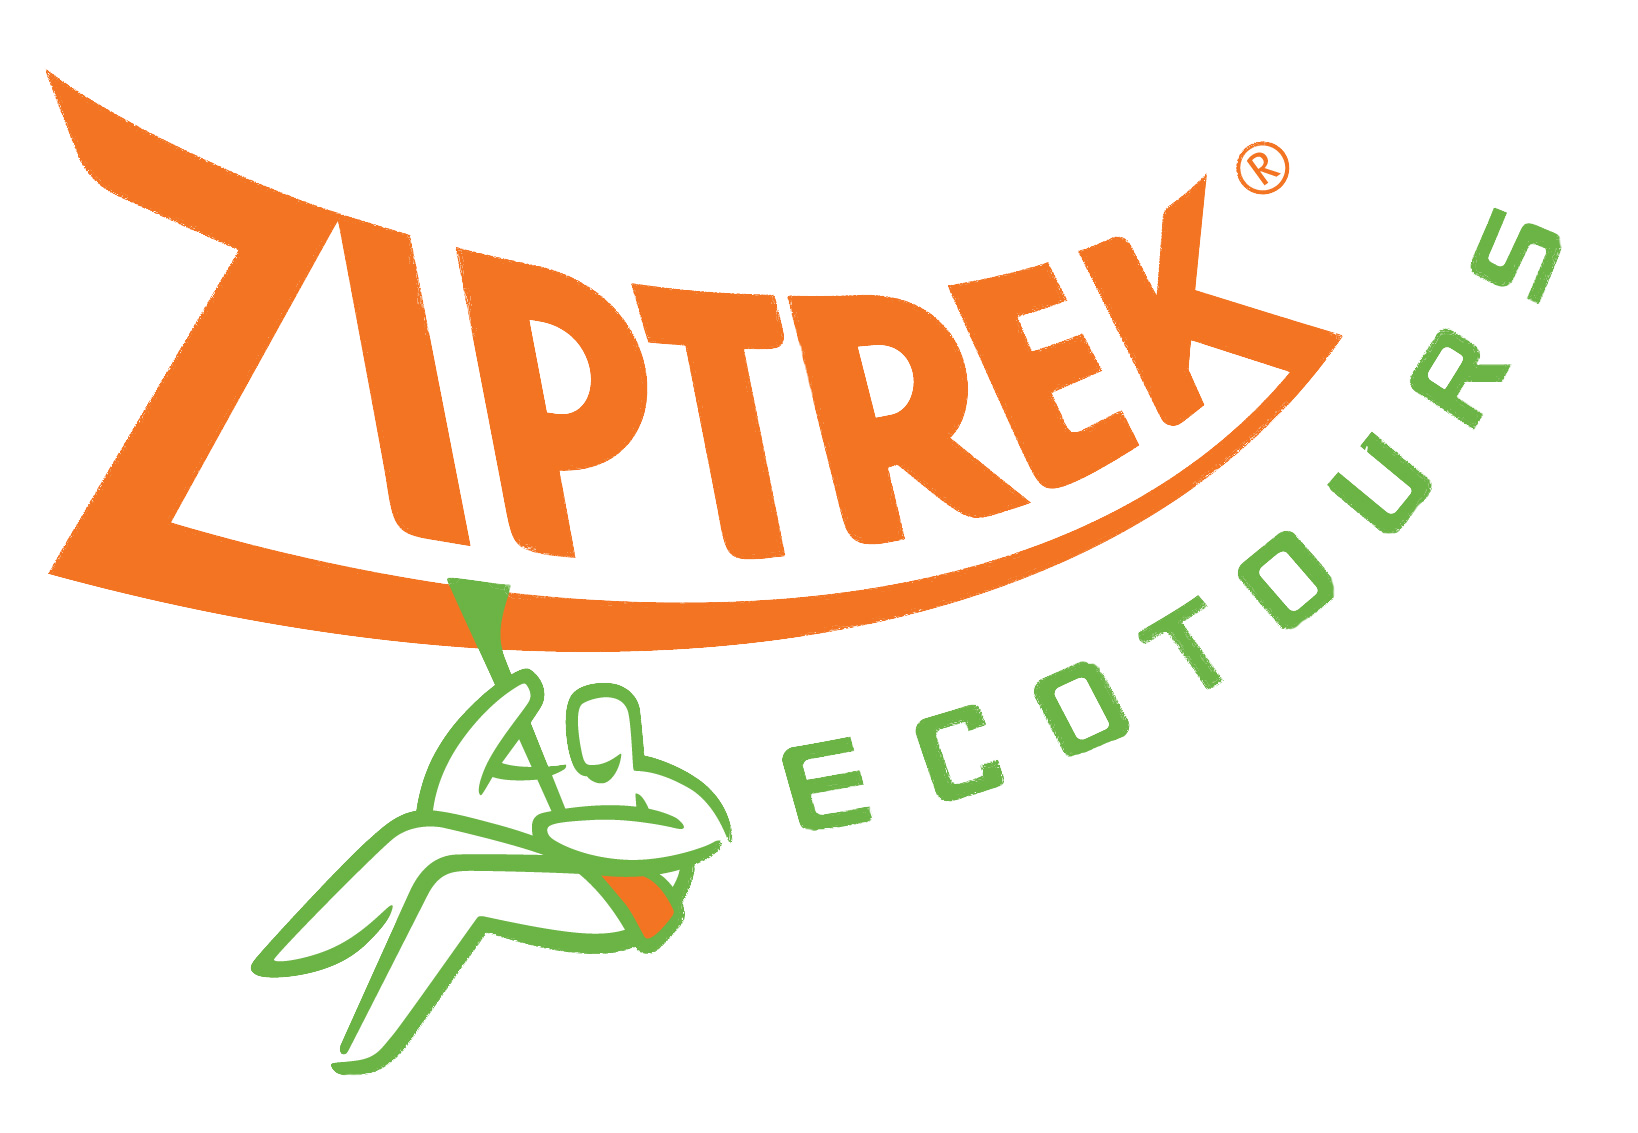 Ziptrek Écotours